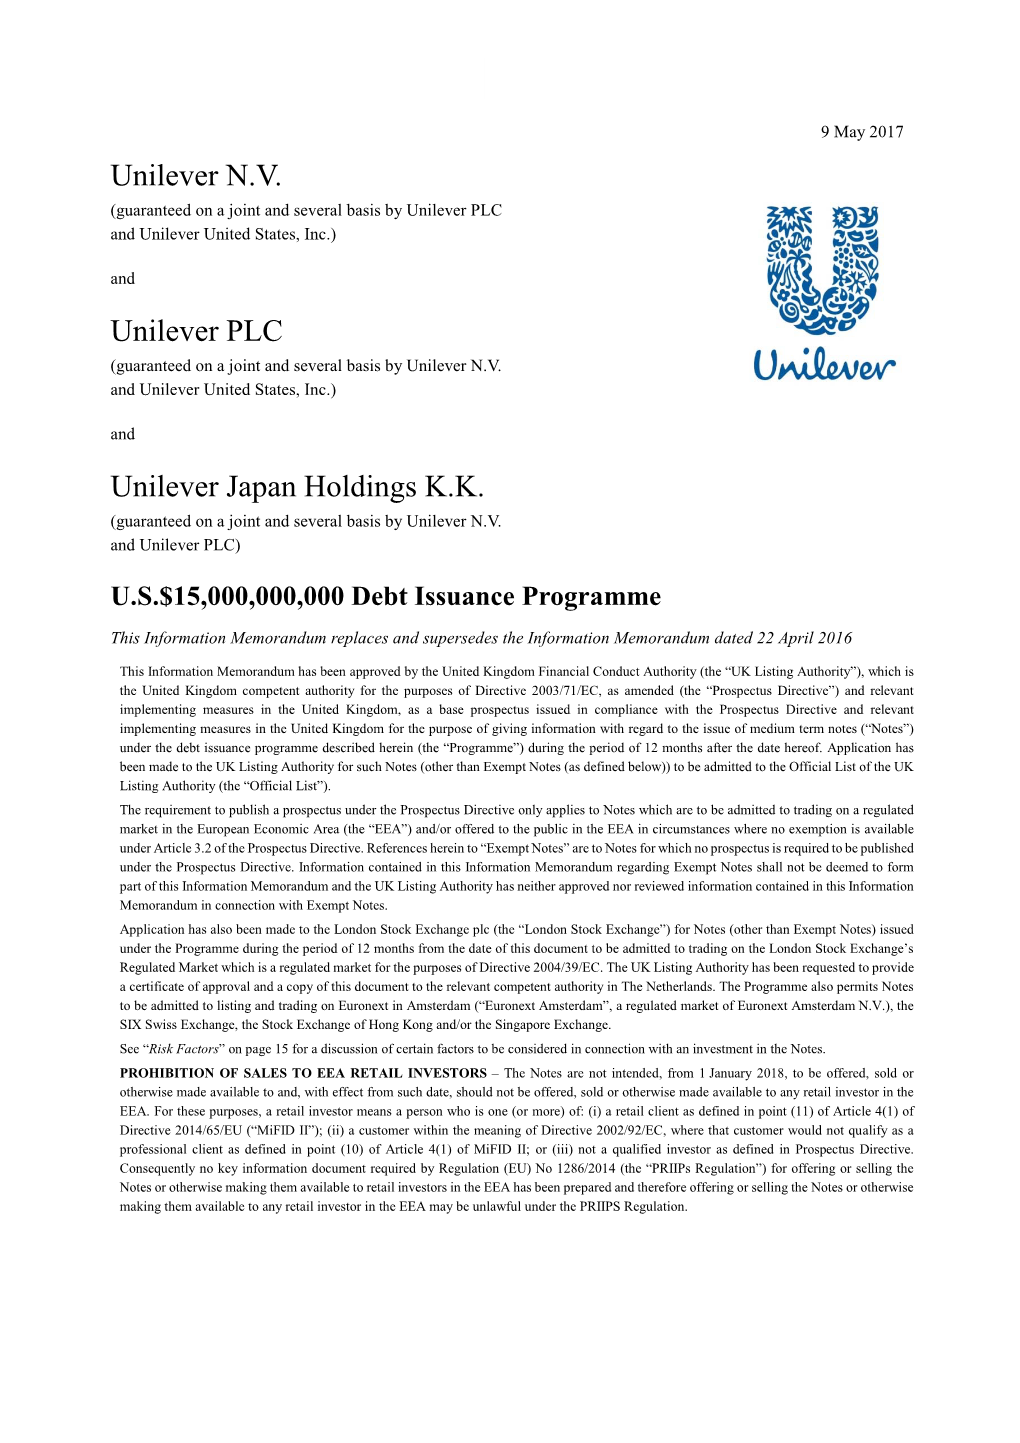 Unilever N.V. Unilever PLC Unilever Japan Holdings K.K